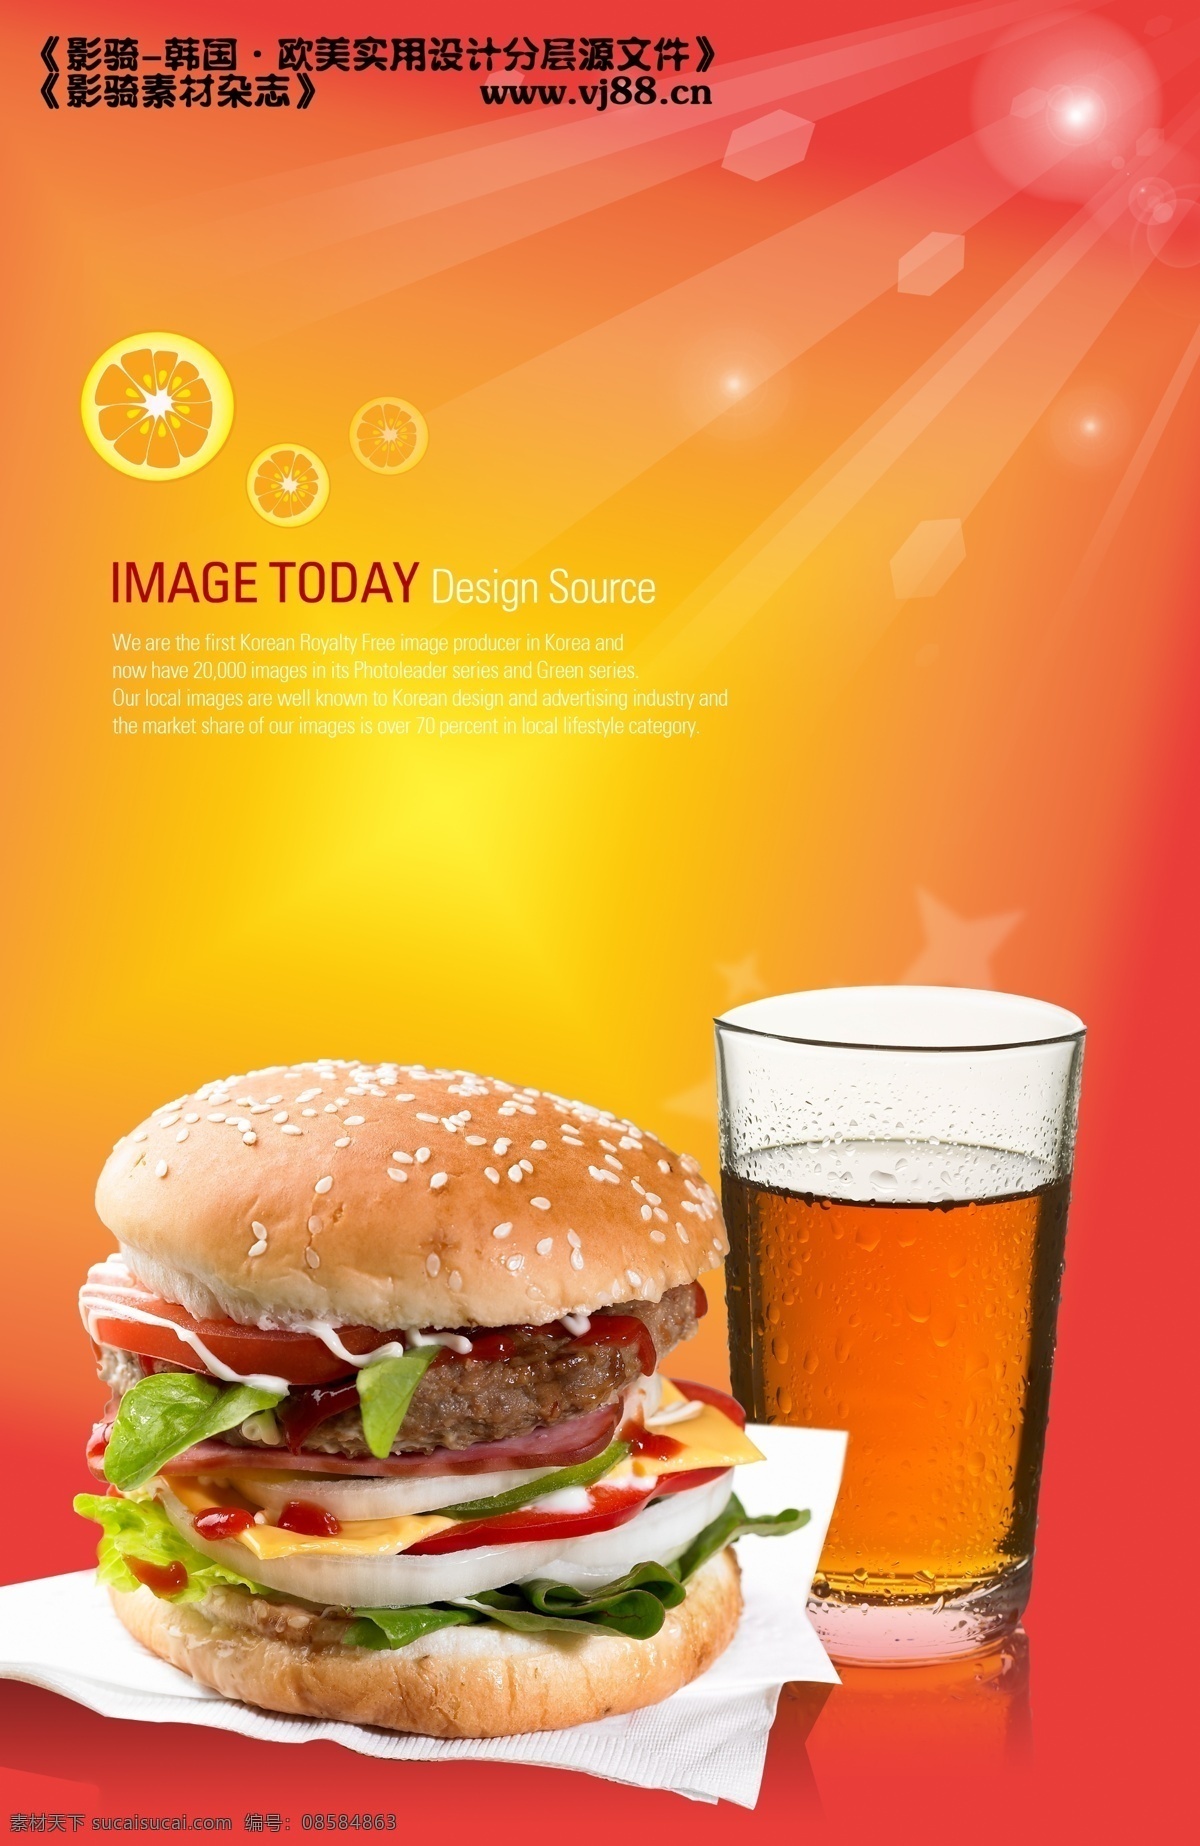 饮食 类 汉堡 饮食类用图 西餐厅背景图 psd源文件 餐饮素材